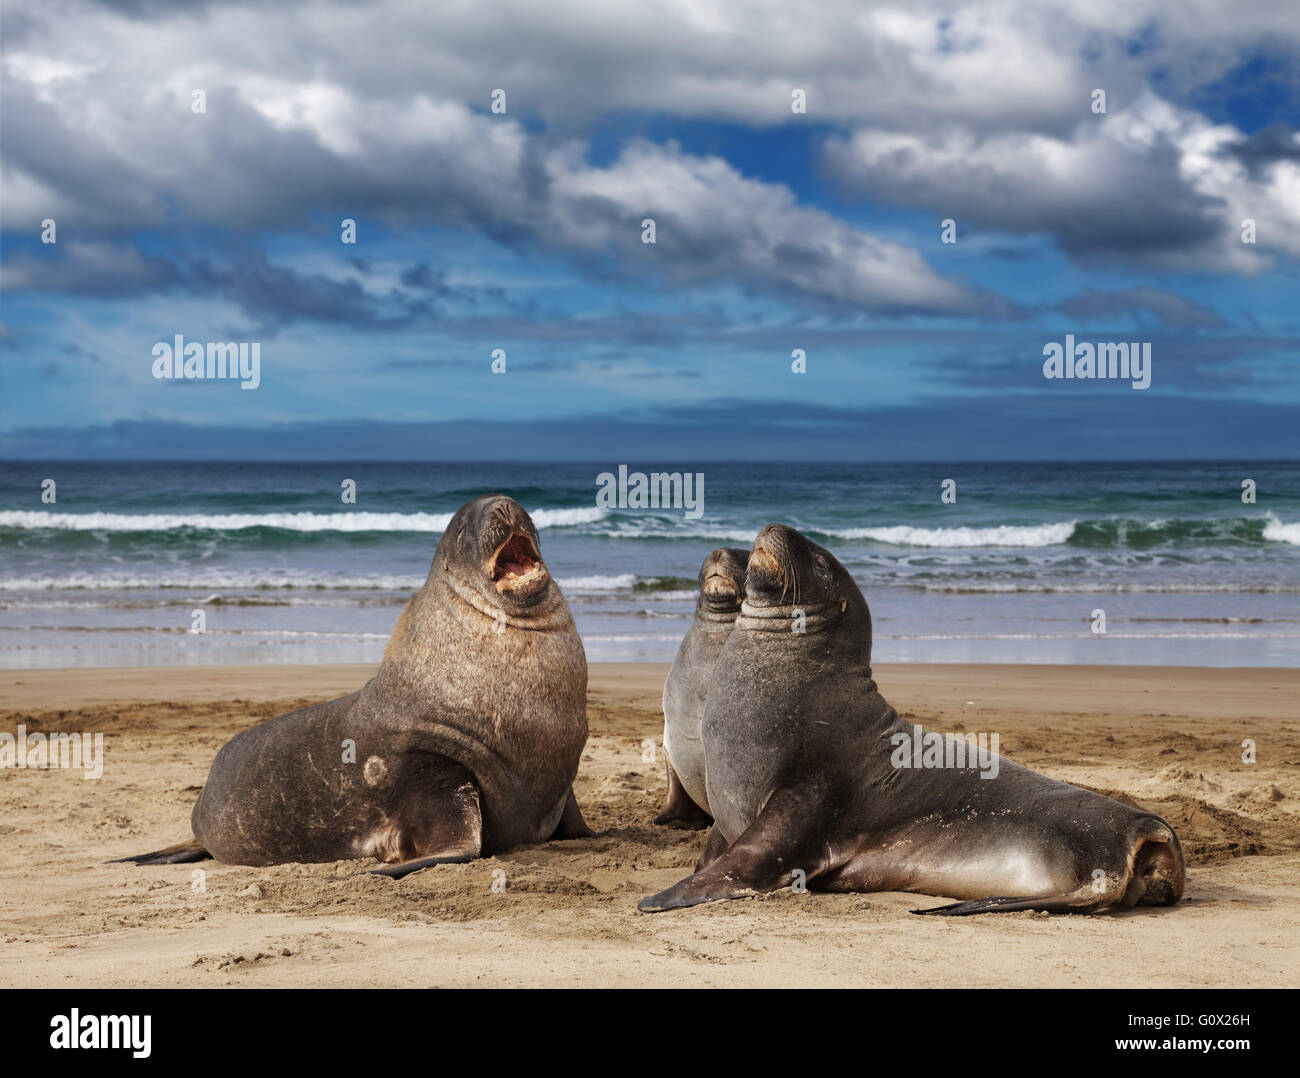 Los lobos marinos en la playa, la Bahía de desguace, Nueva Zelanda Foto de stock